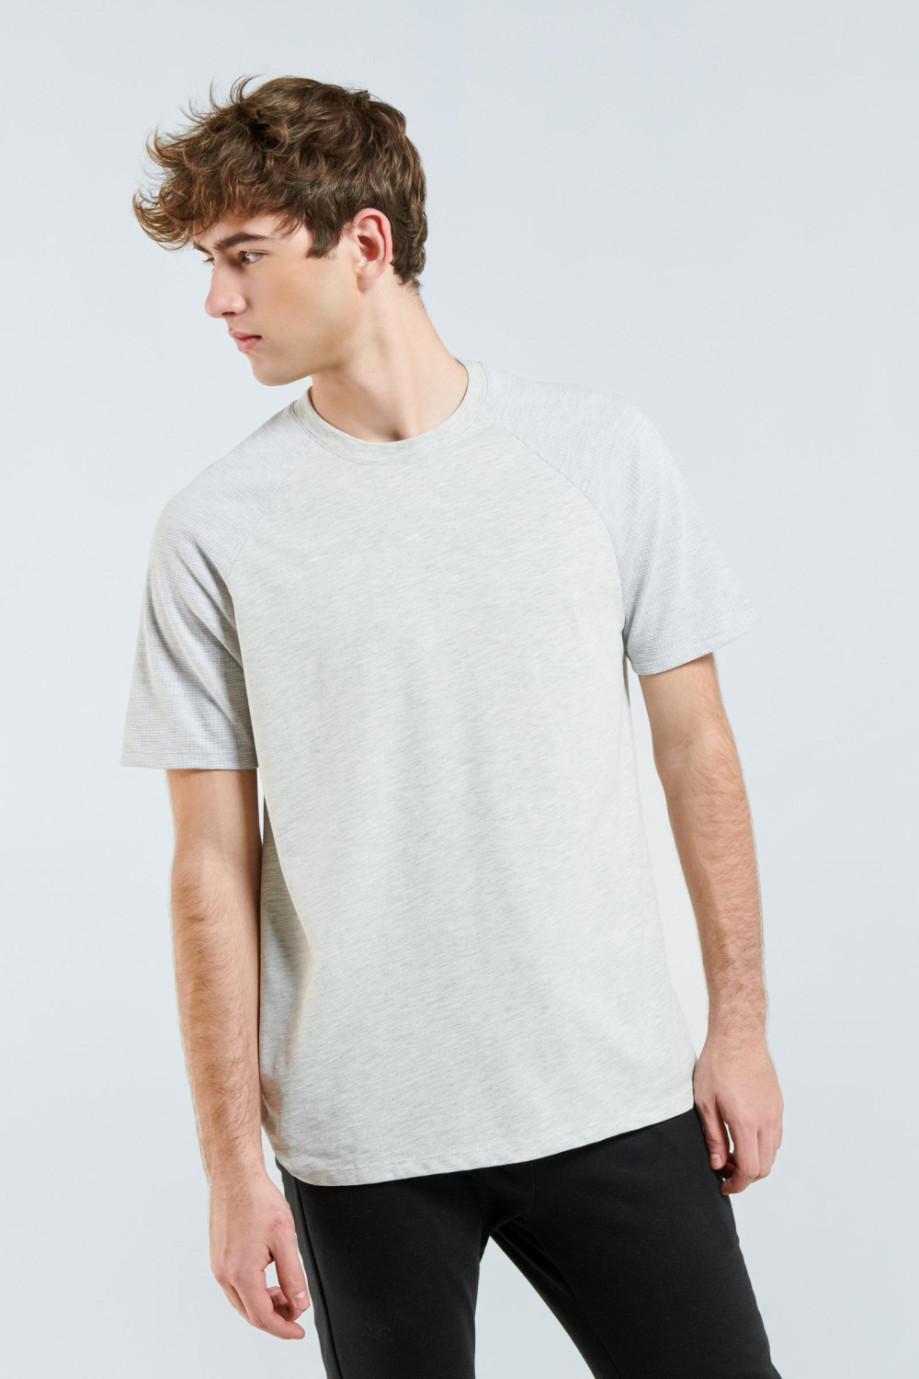 Camiseta gris clara con manga ranglan corta con texturas y cuello redondo